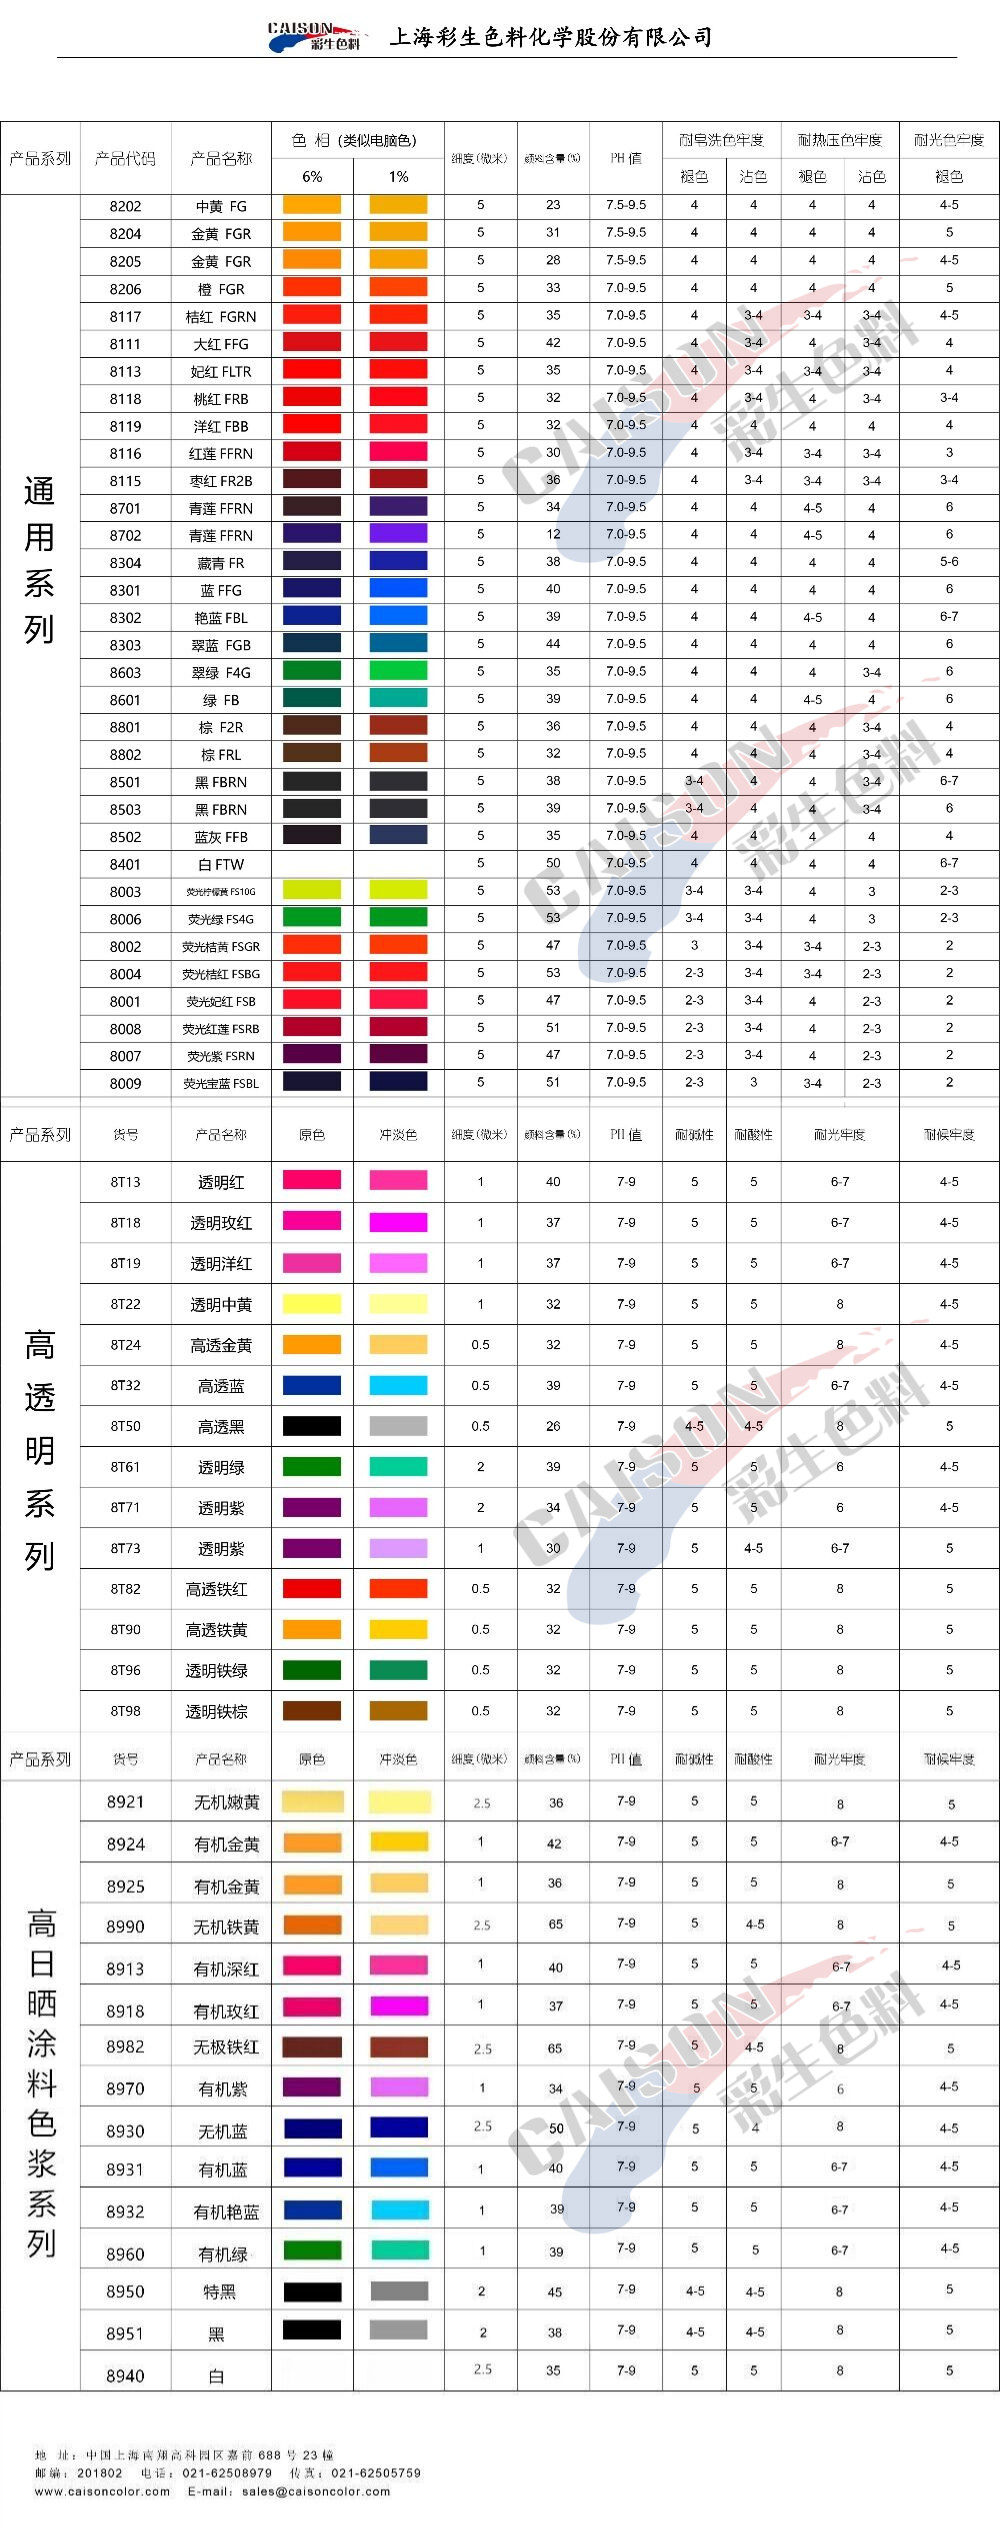 彩生牌8系列水性色浆色卡202003版发布